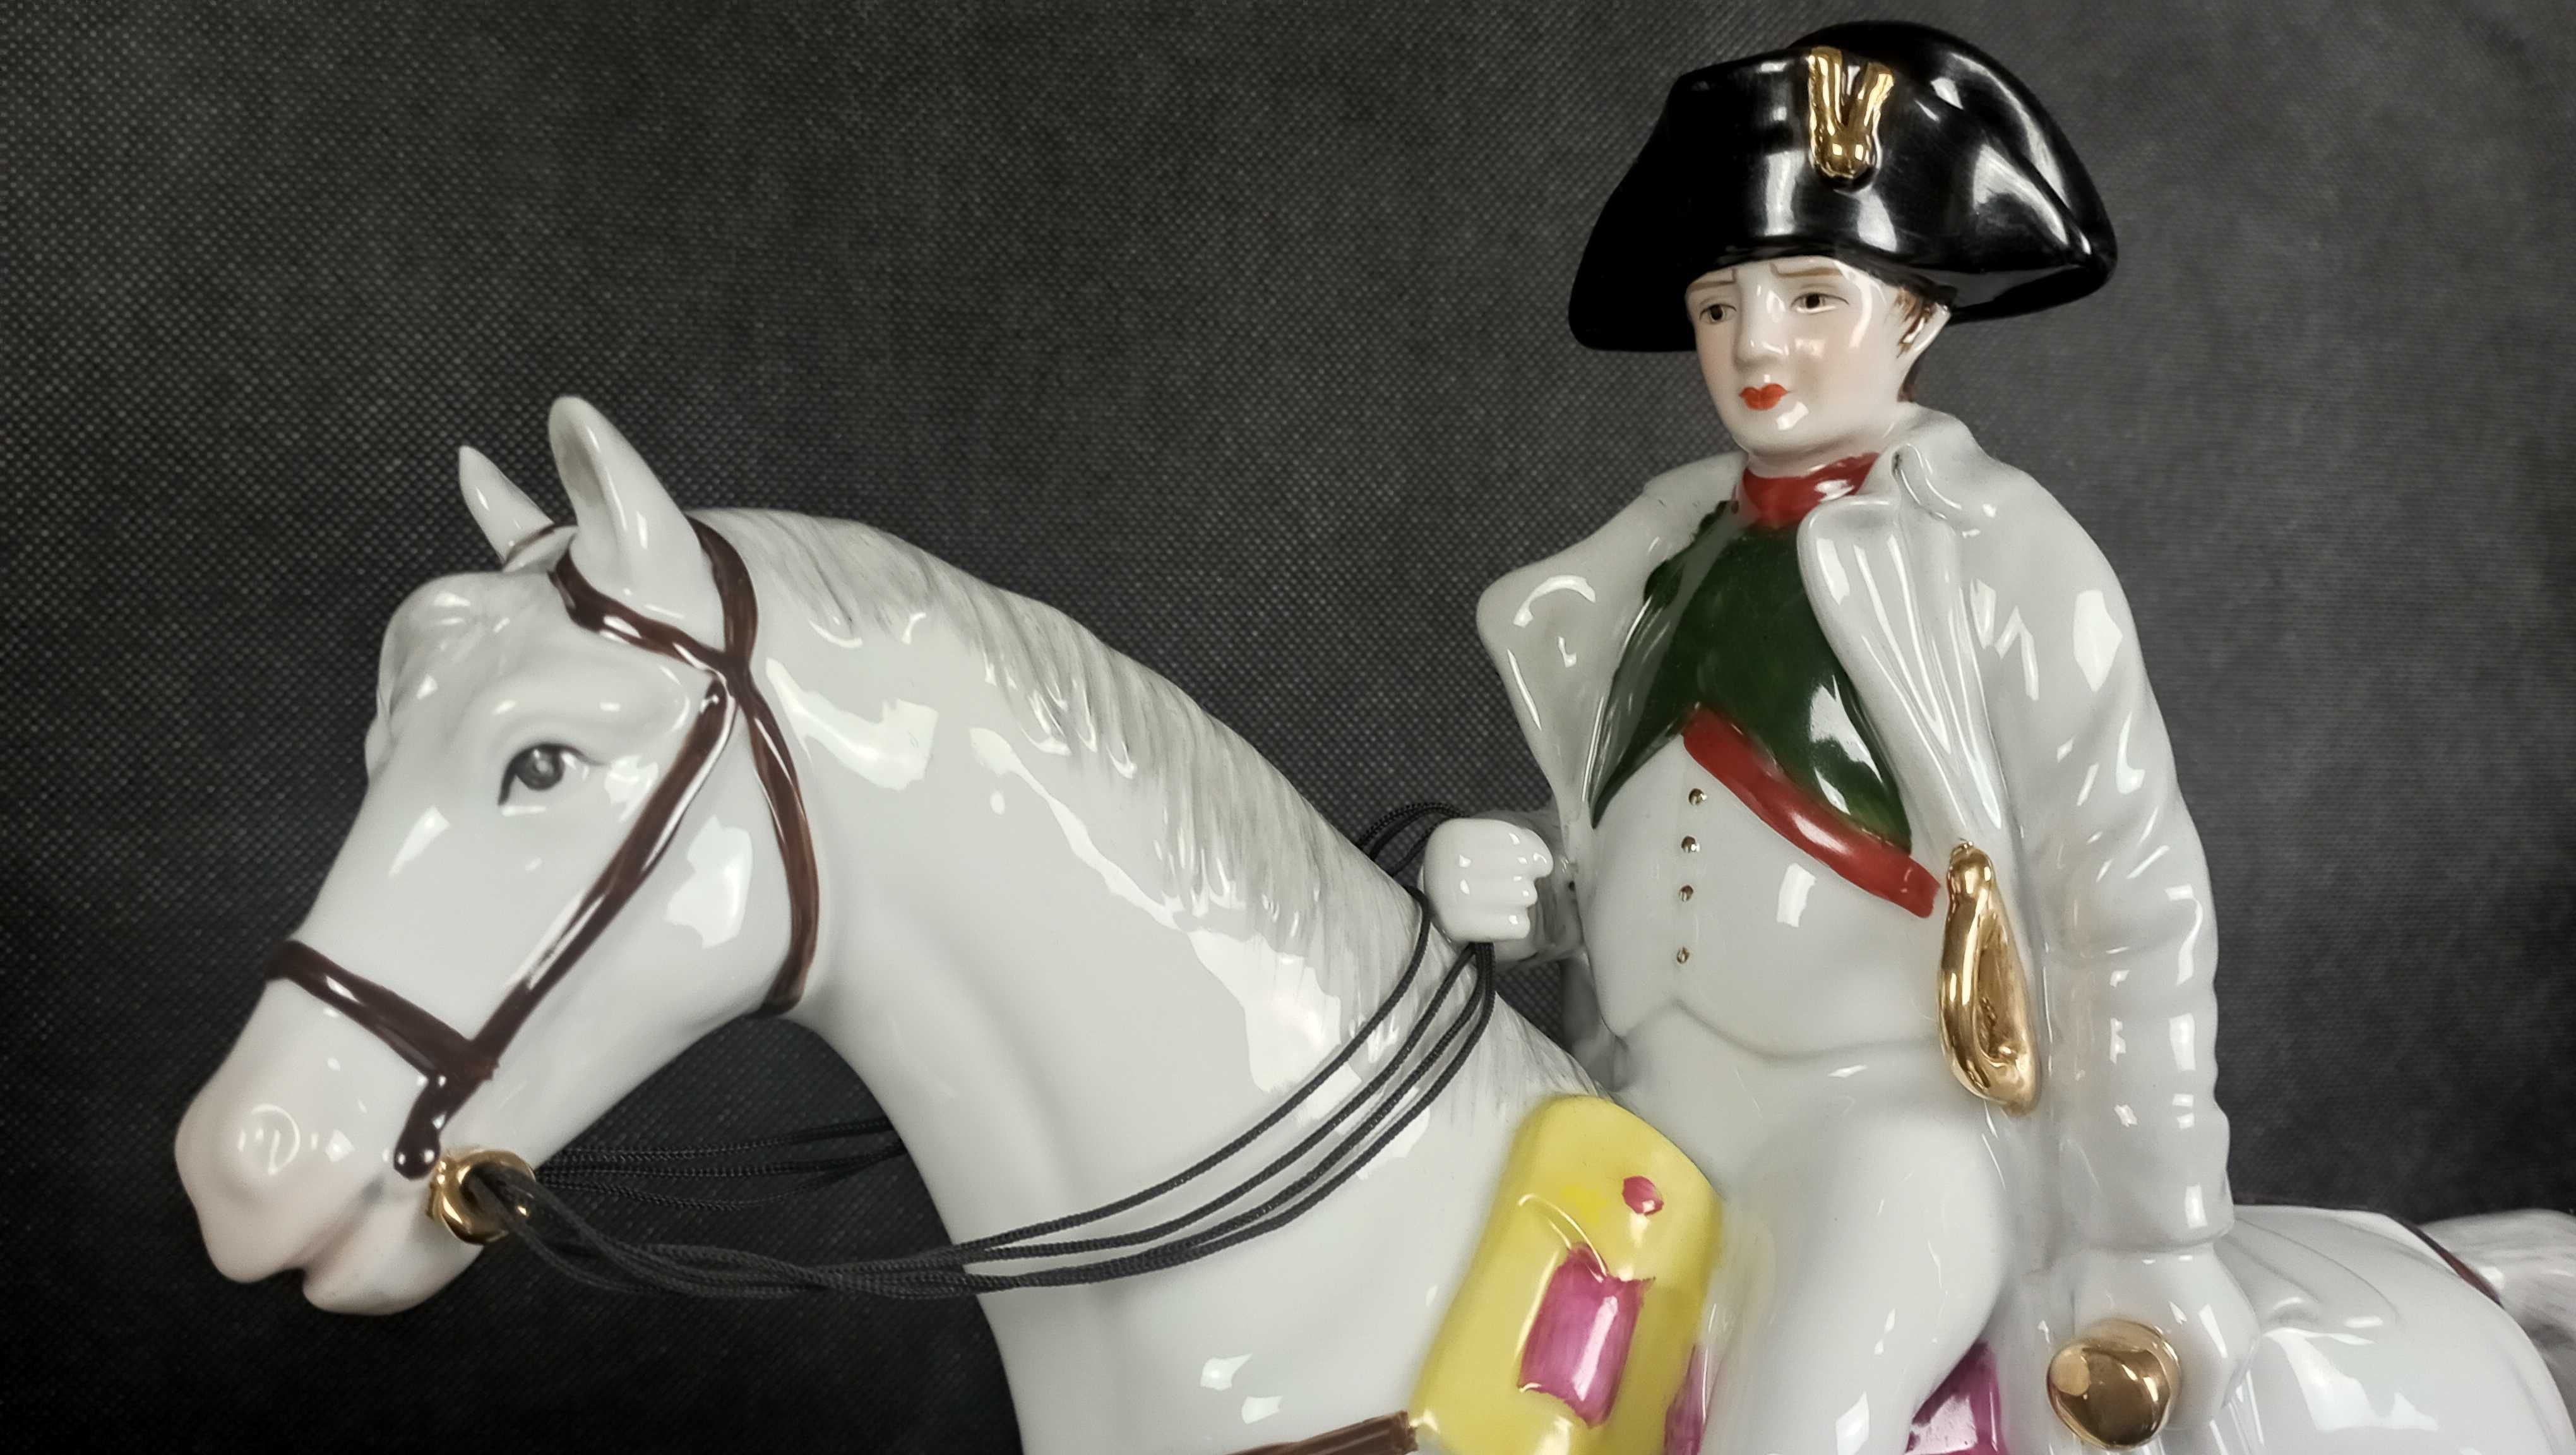 Figurka porcelanowa Napoleon na koniu. Neundorf